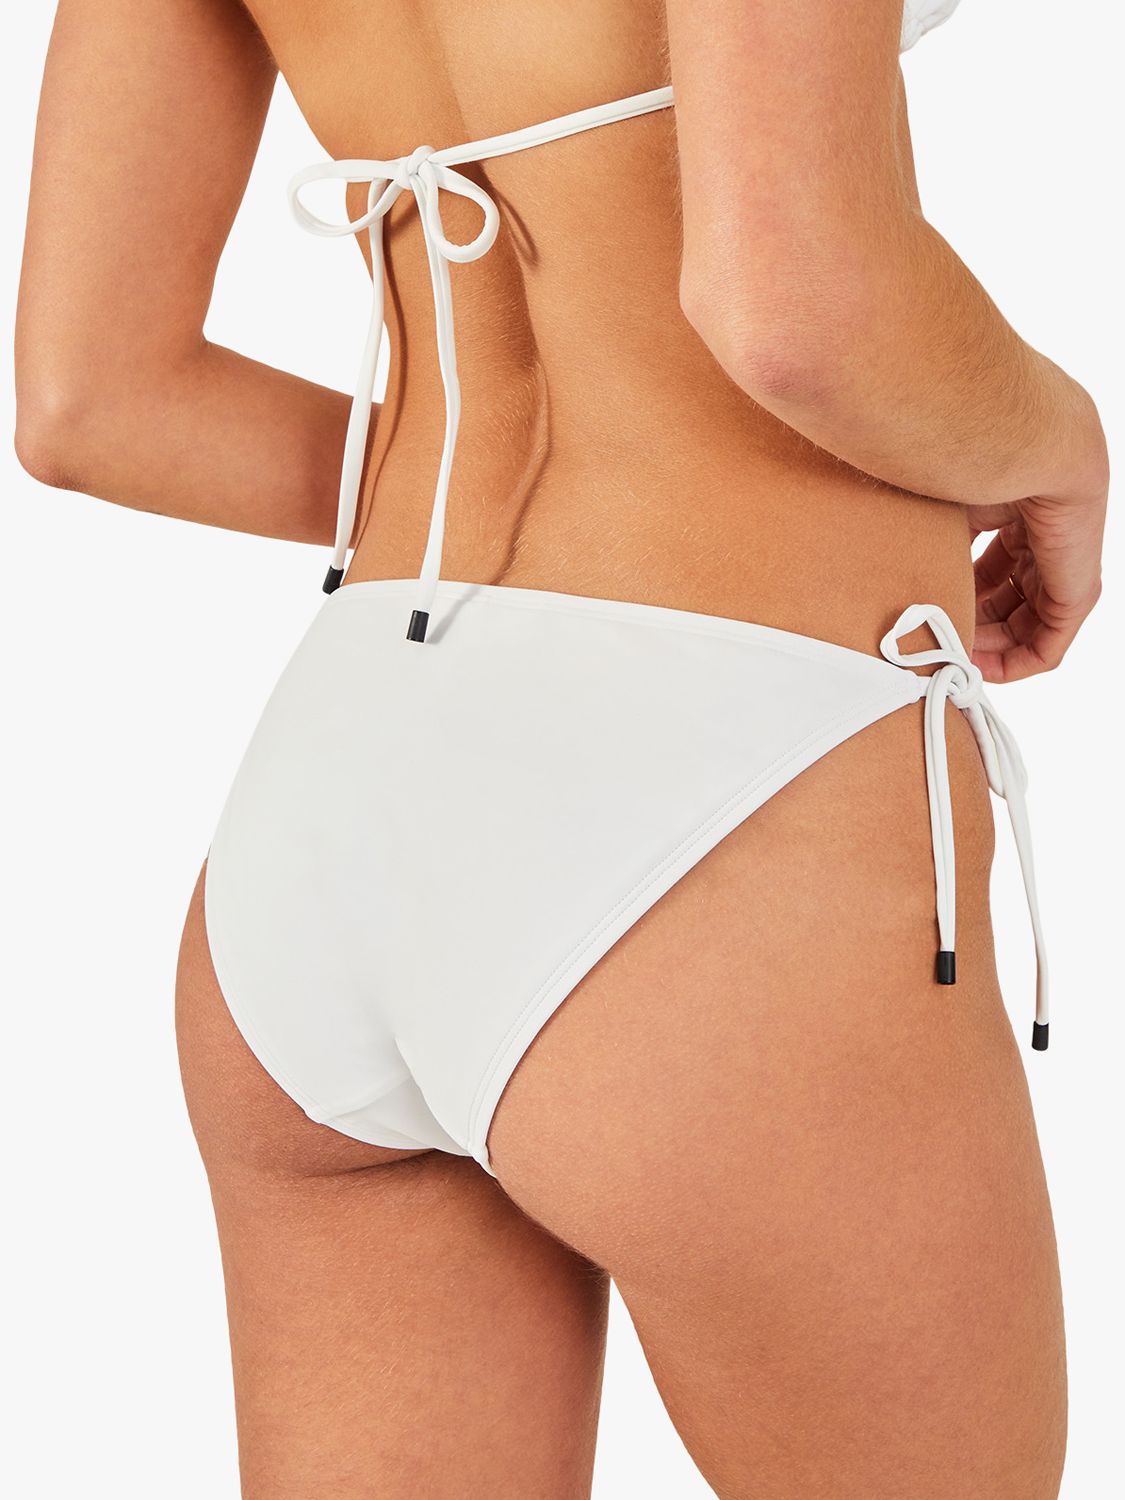 Accessorize Embroidered Fan Tie Side Bikini Bottoms, White, 12